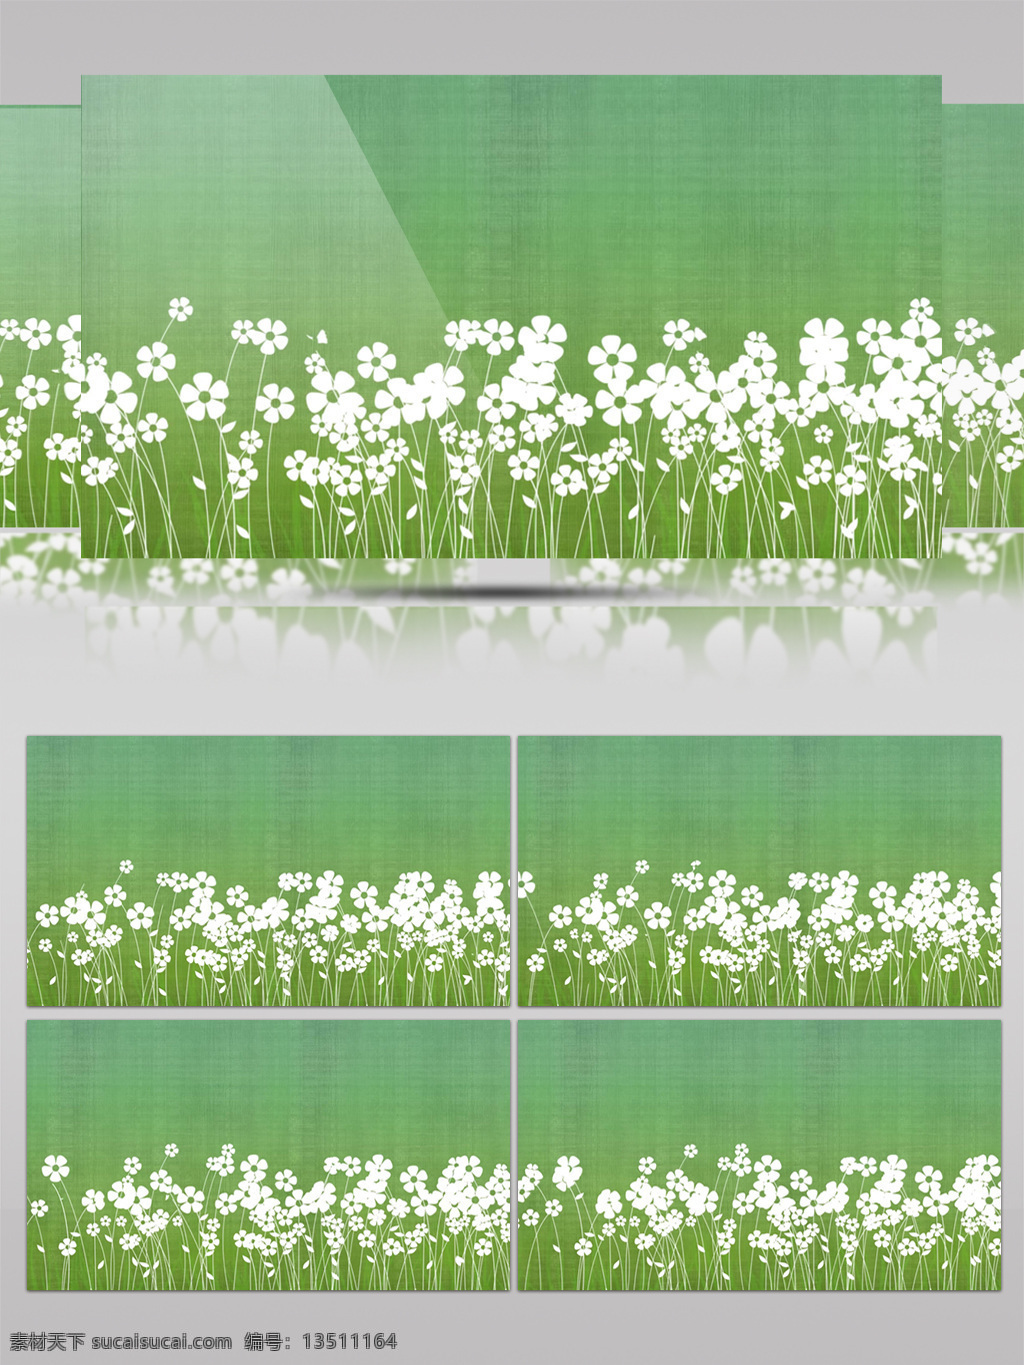 风 中 摇曳 绽放 白色 小花 视频 花朵 花卉 植物 绿色 绿叶 白花 美丽 卡通